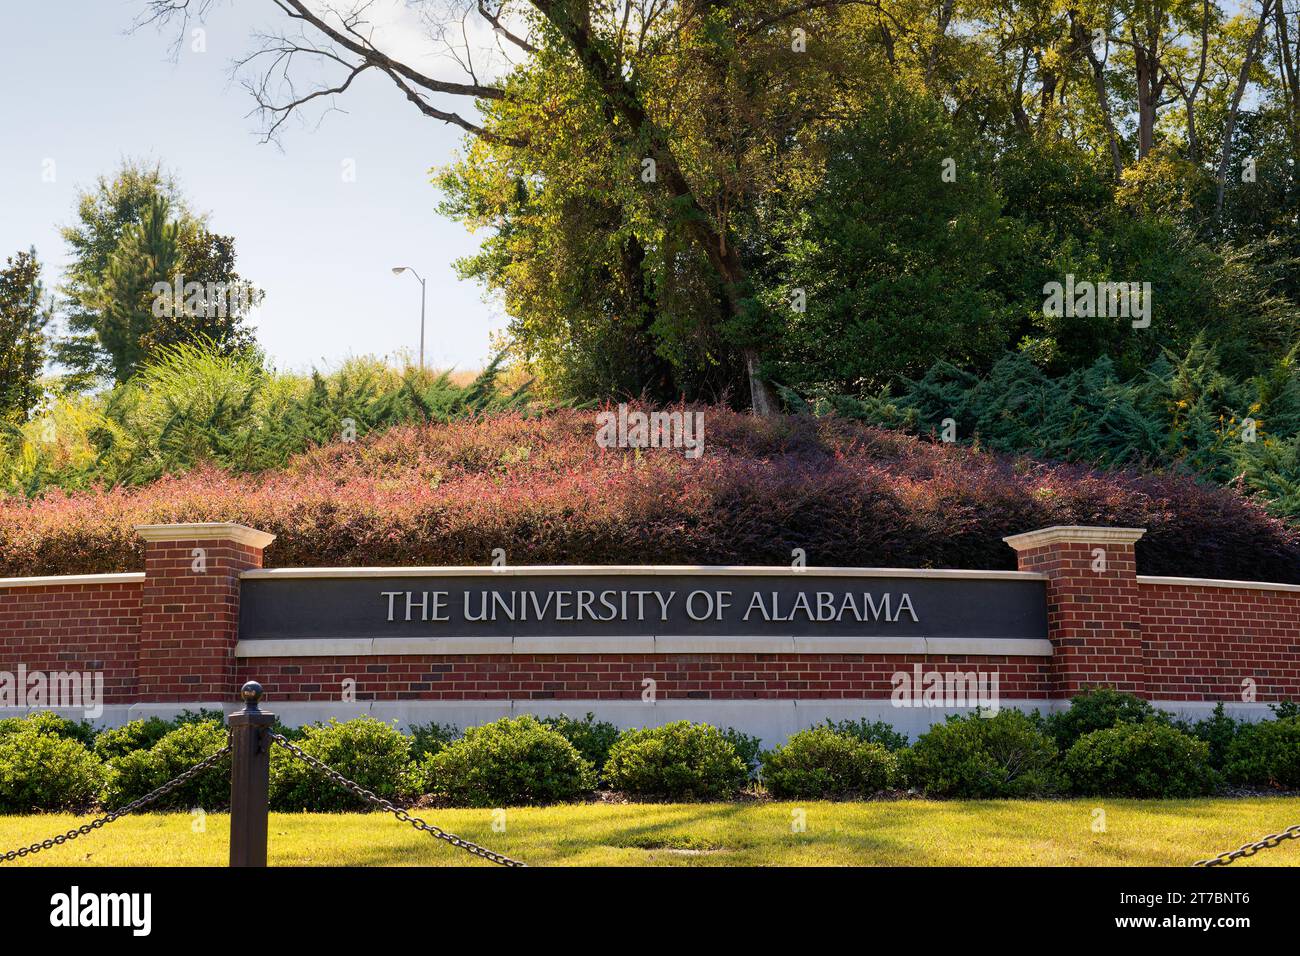 Das Schild der University of Alabama in Tuscaloosa, Alabama, auf einer Ziegelmauer mit schöner Landschaftsgestaltung Stockfoto